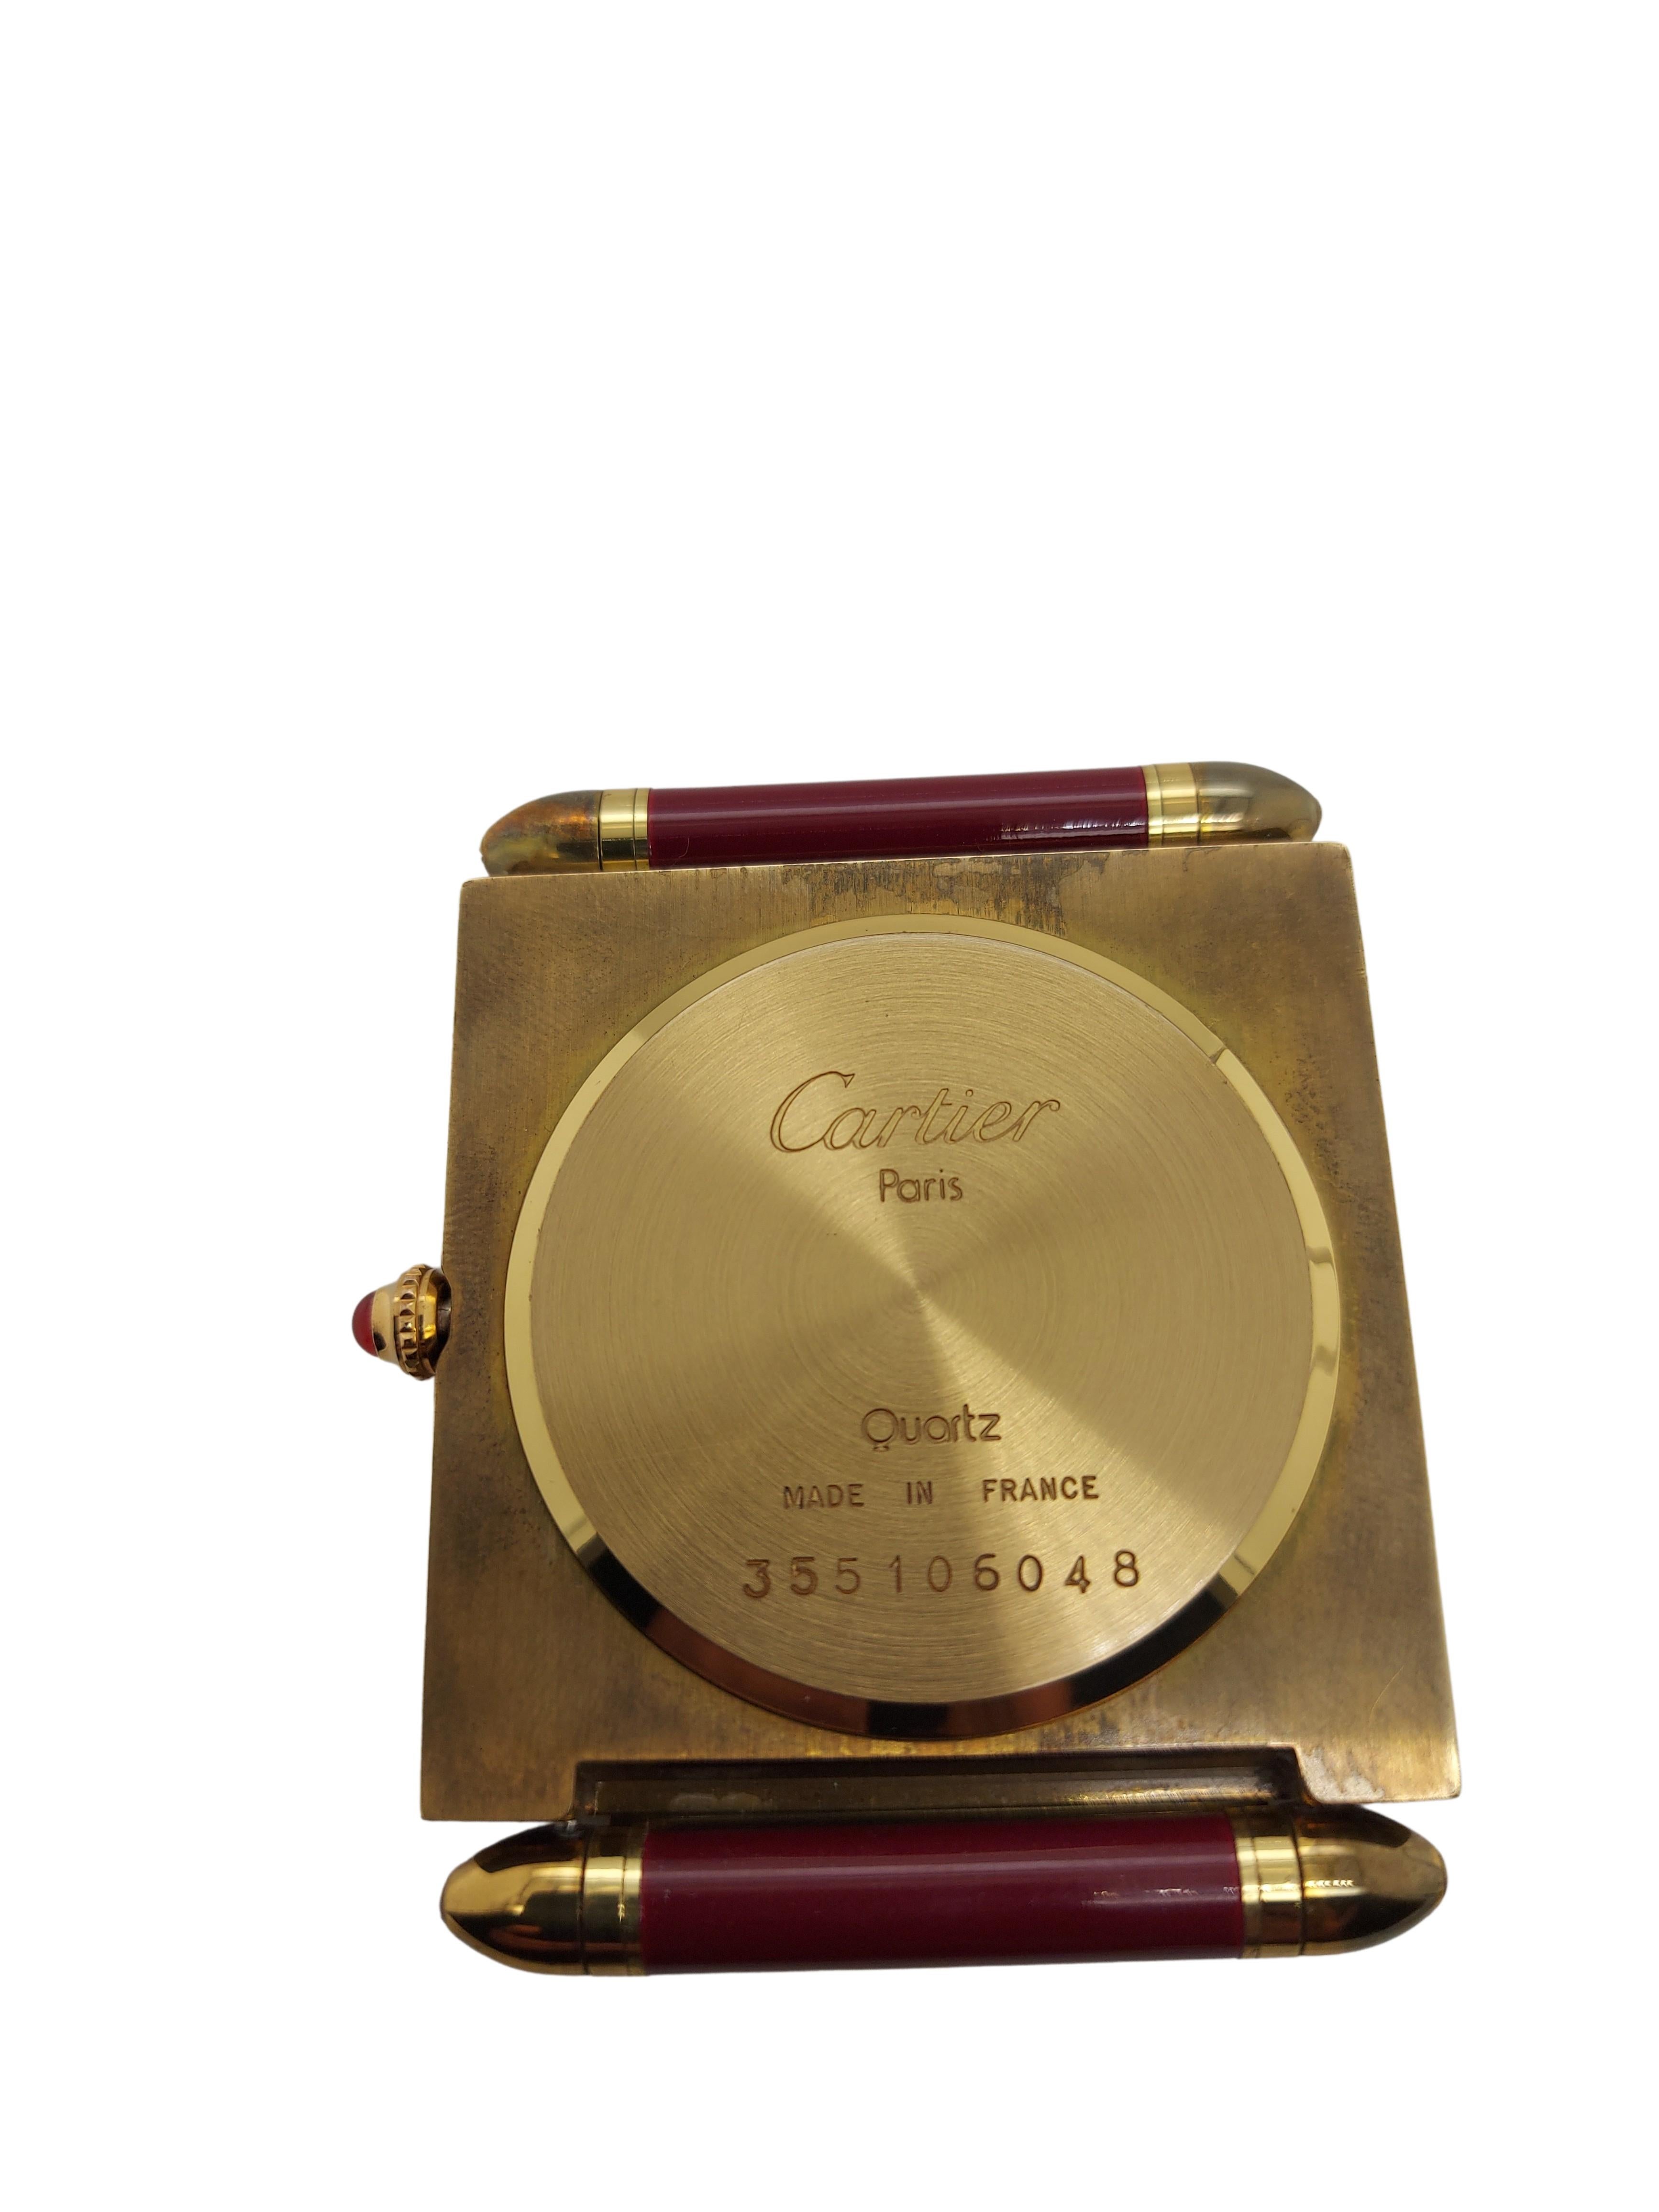 Women's or Men's Cartier Paris, French Quartz Quadrant Traveling Alarm Clock